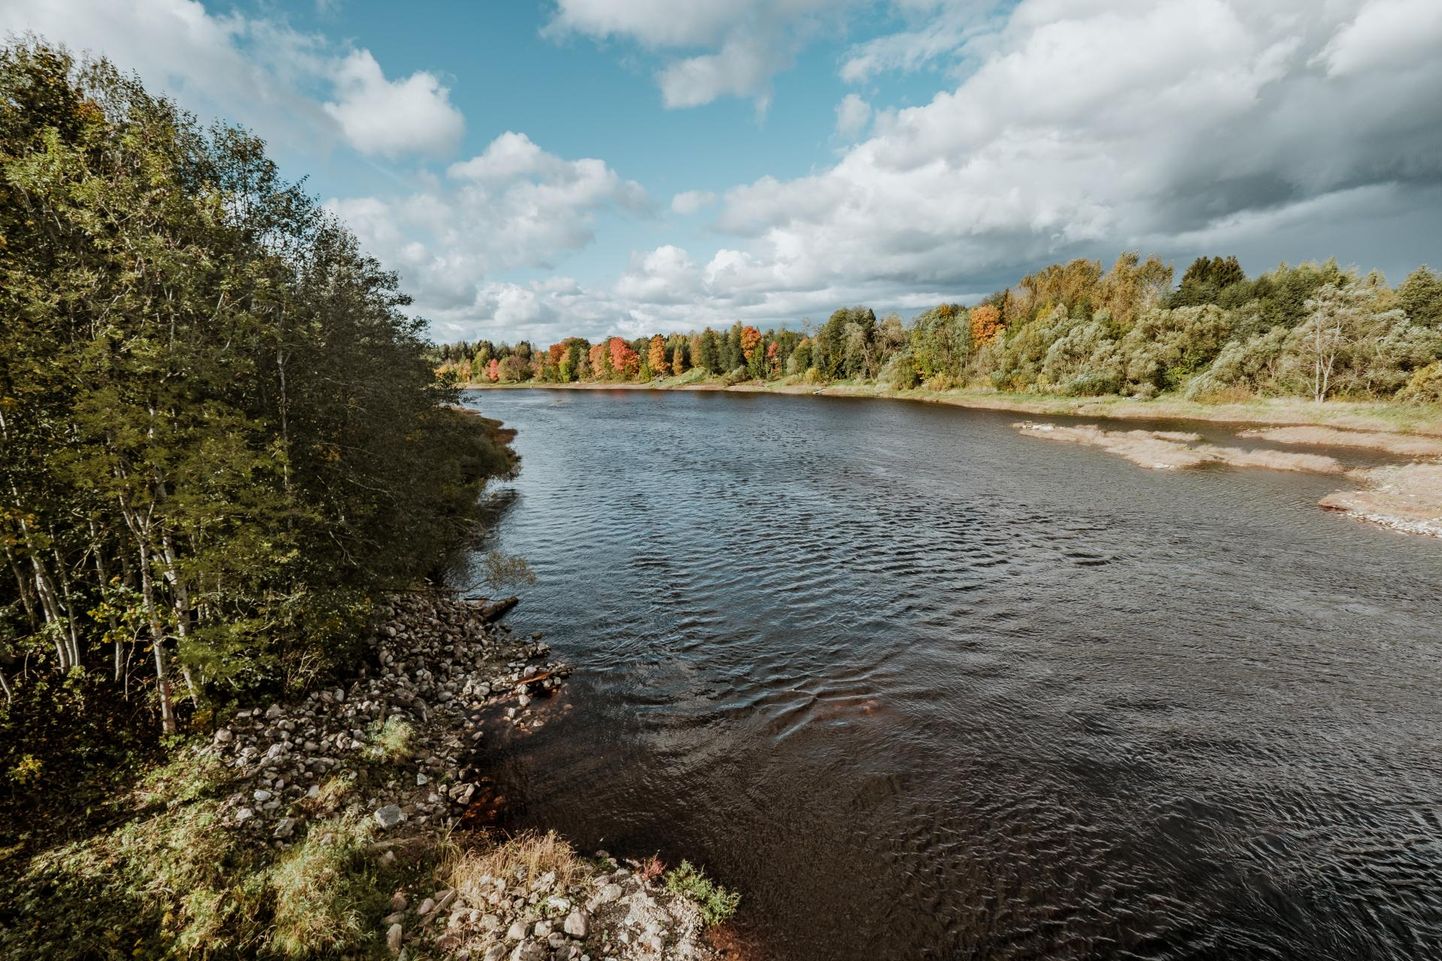 Ühisprojektis võetakse Läti poolelt vaatluse alla Salatsi jõgi ja Eestist Pärnu oma (pildil). Mõlema veekogu kohta koostatakse arvutusmudel, mis võtab arvesse kogu inimese tekitatud fosfori ja lämmastiku mõju jõele.